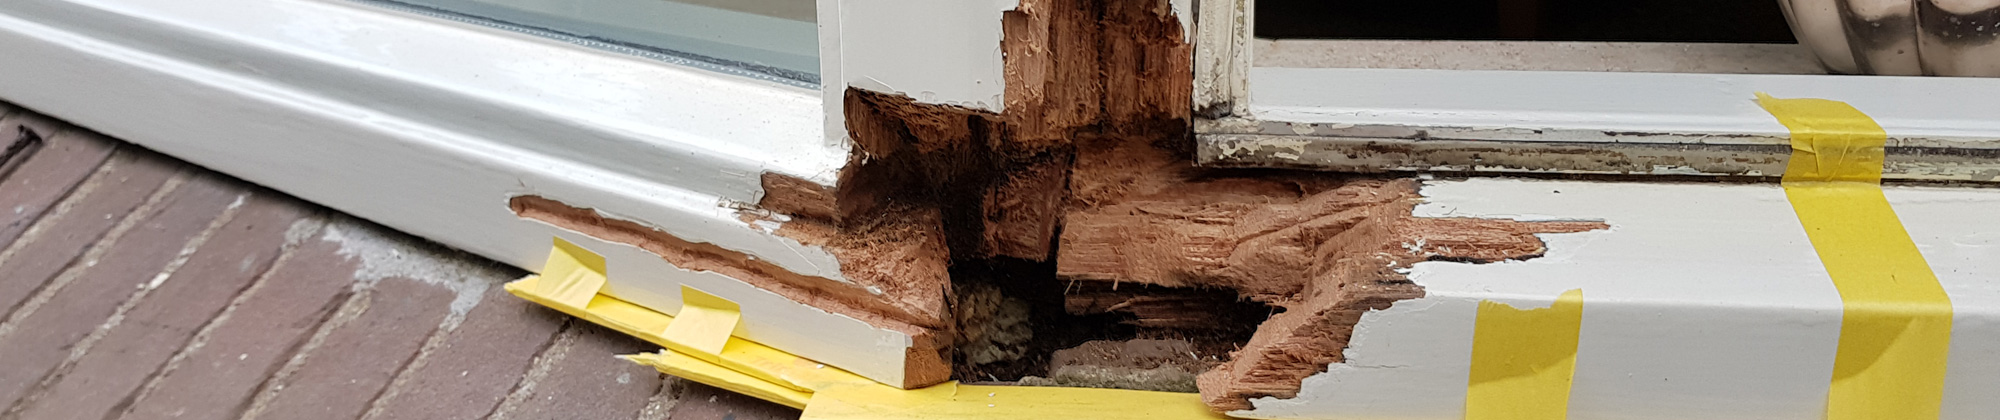 Schilder Montfoort Aantjes hout rot reparaties